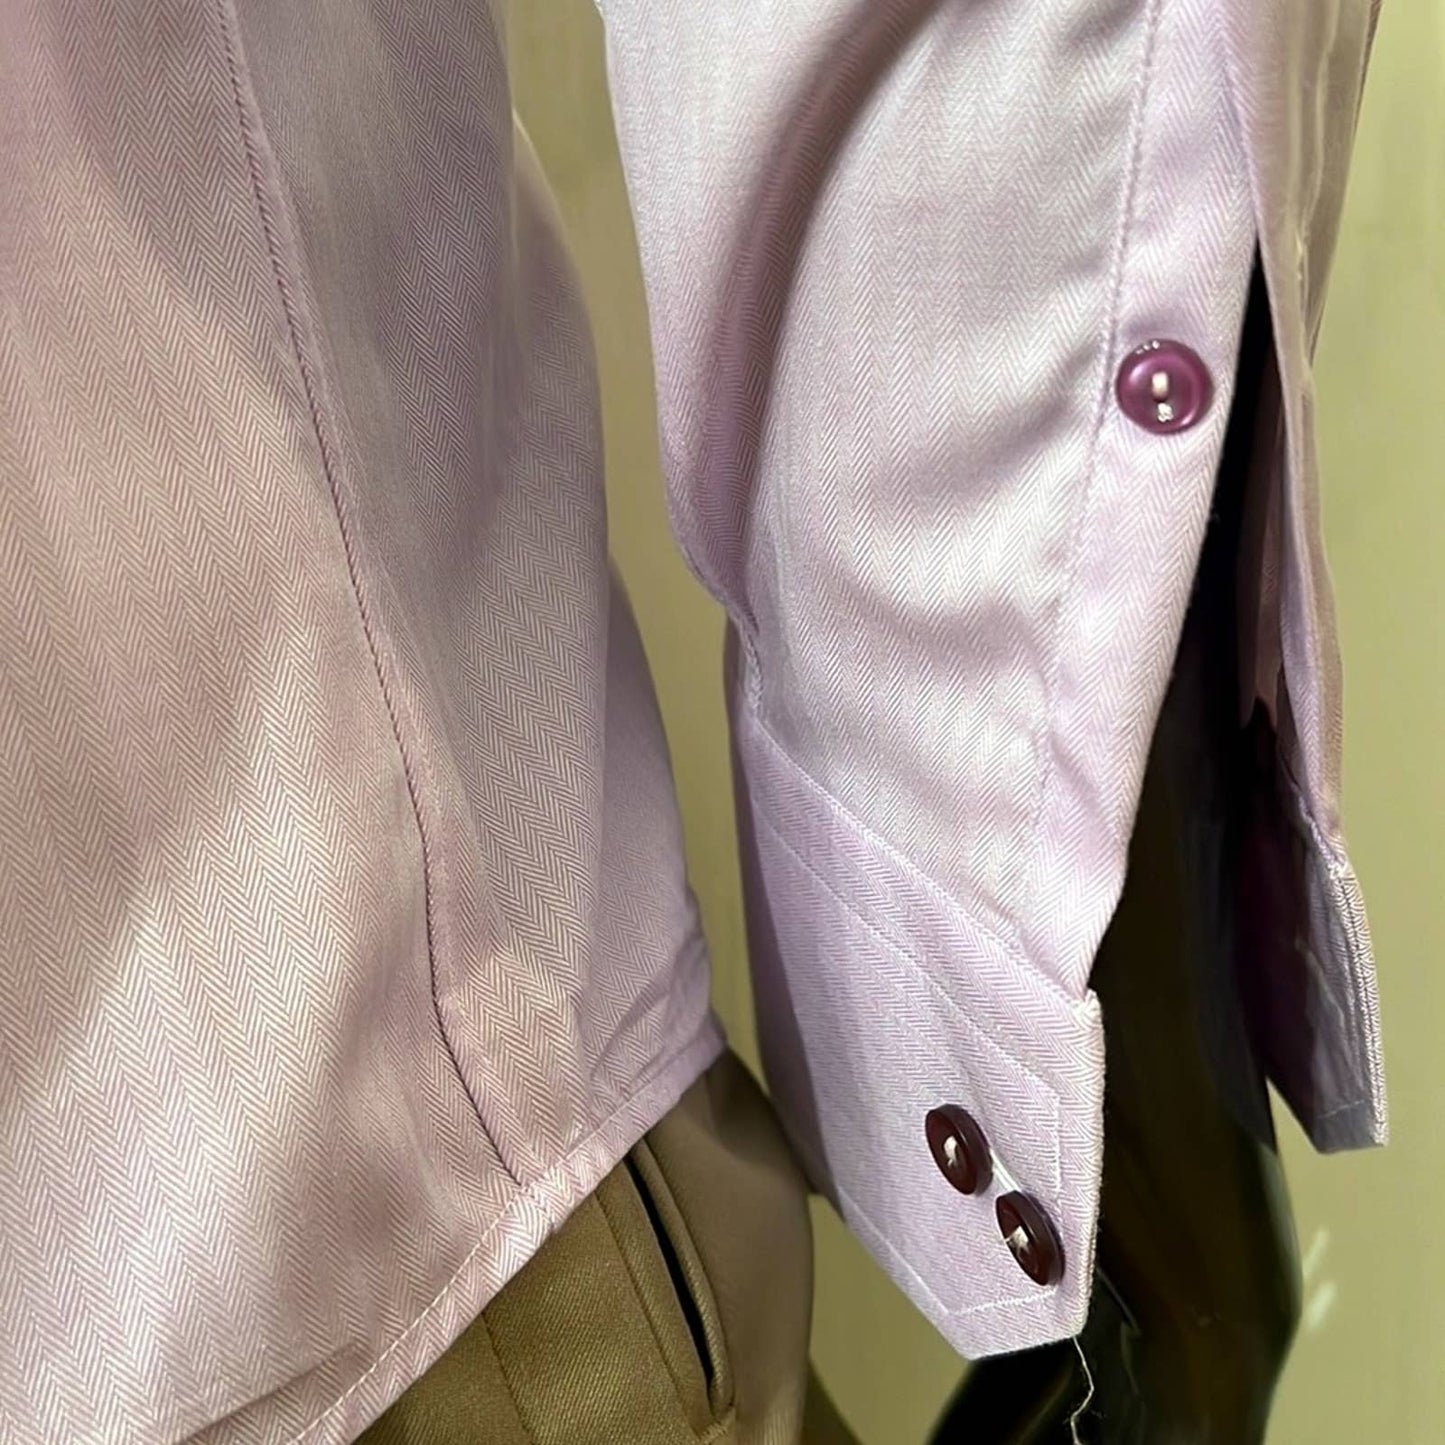 MENS: ETON • Lavender Button Down Shirt 15 1/2